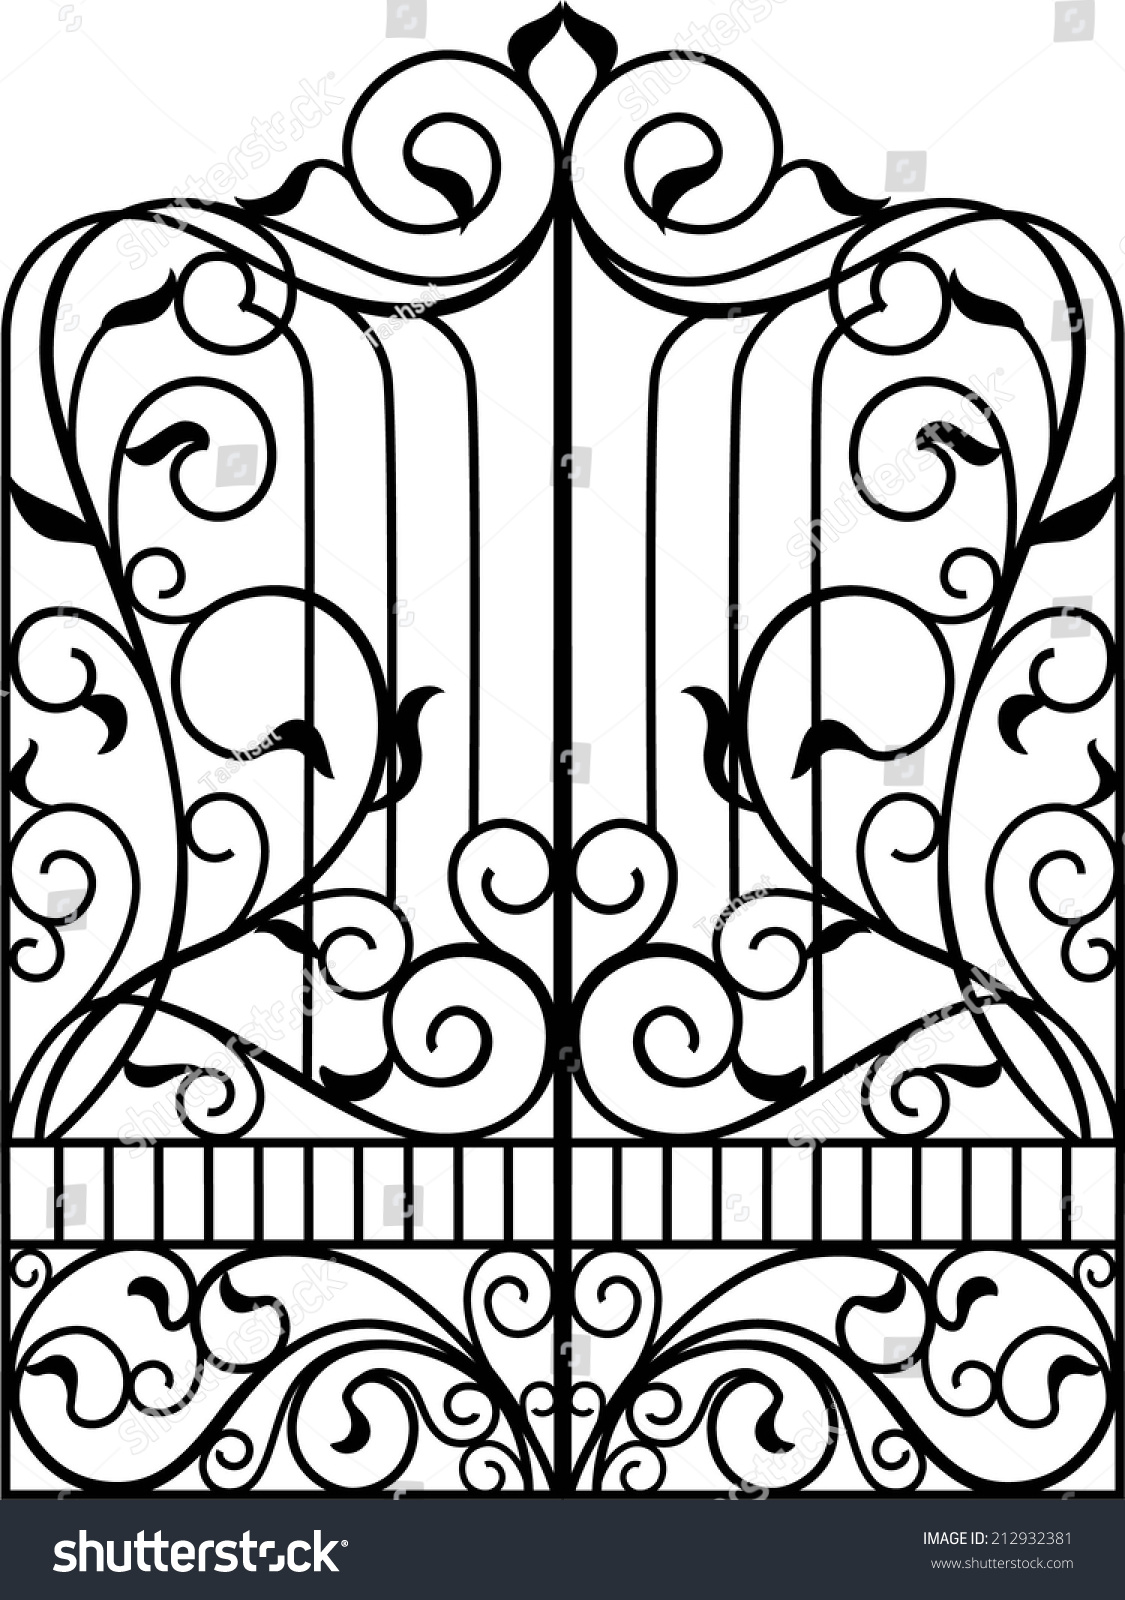 clip art wrought iron gates - photo #43